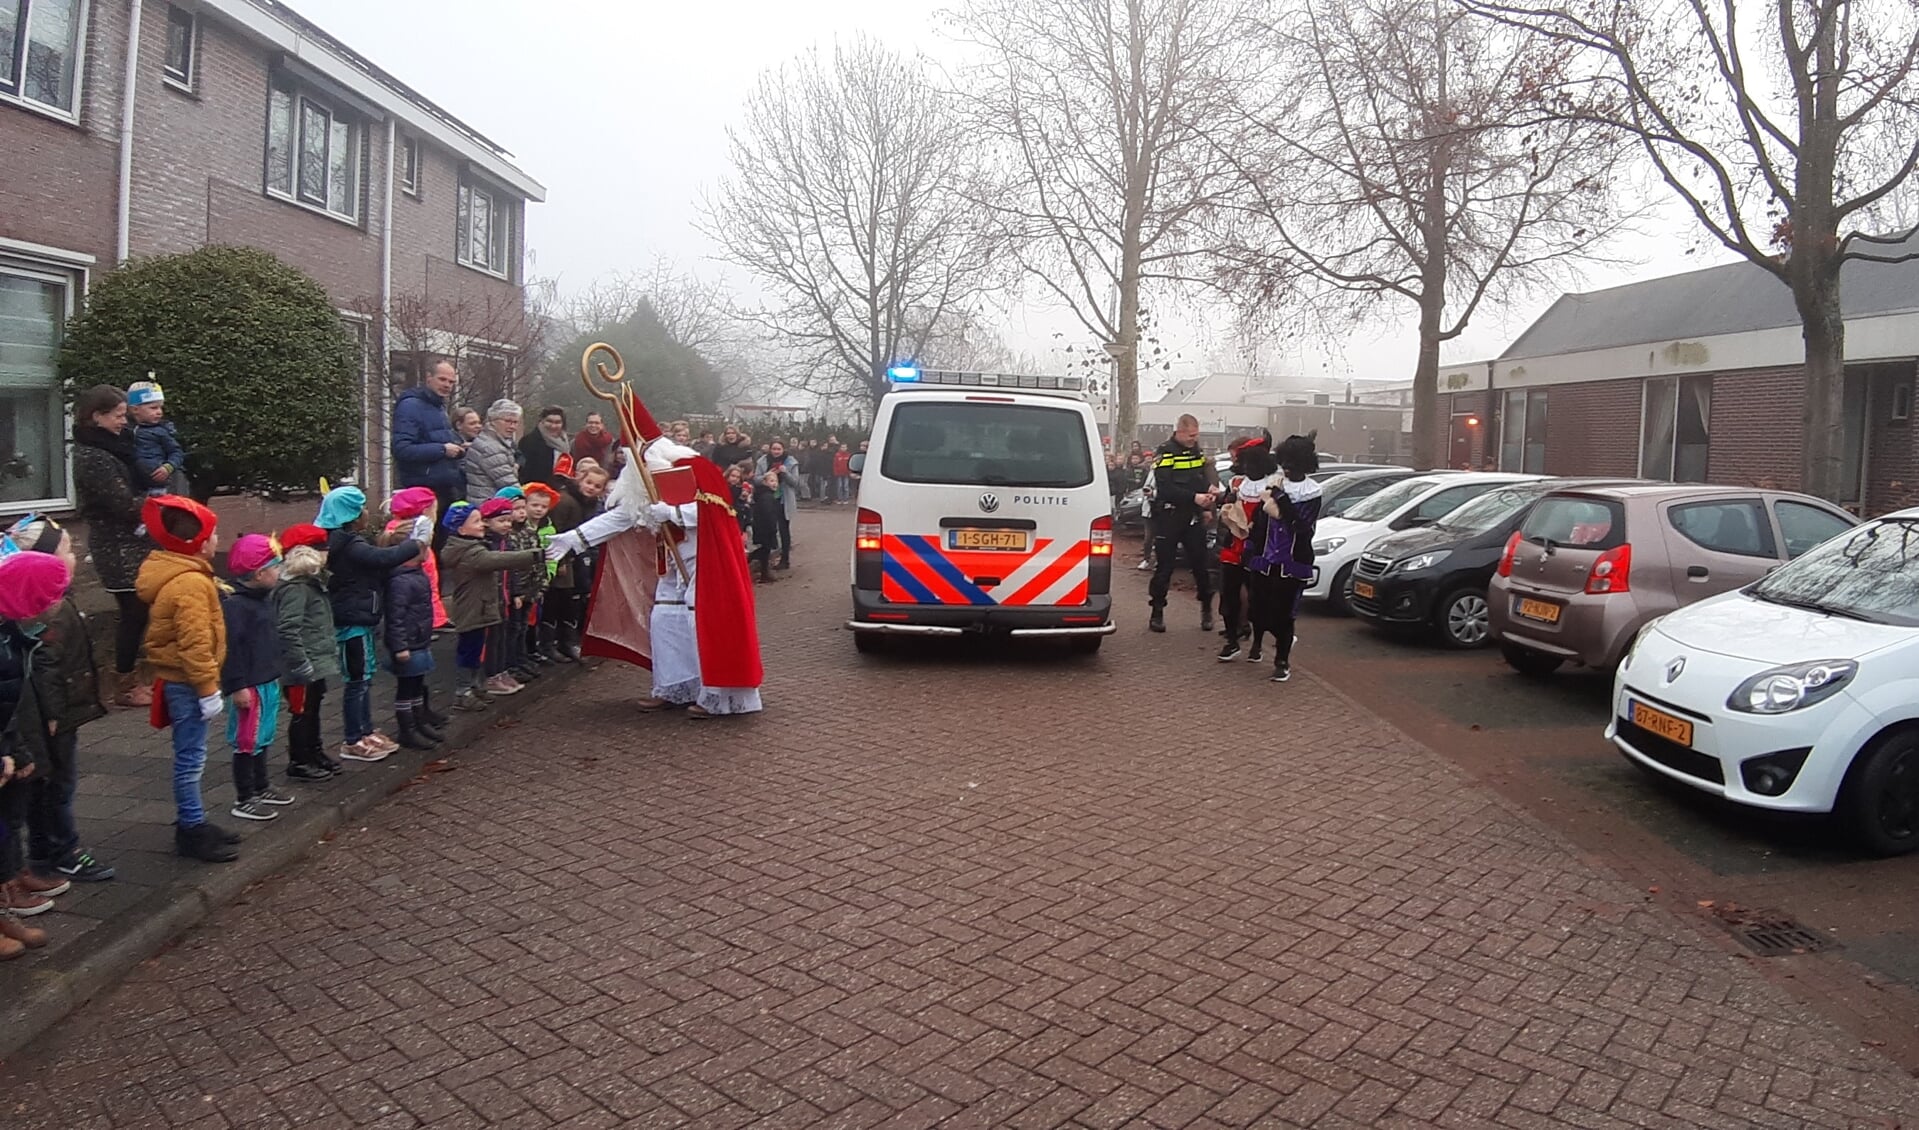 De Sint komt aan met de politiebus van Gerjan Bloemendal bij basisschool het Fundament te Nieuwland 